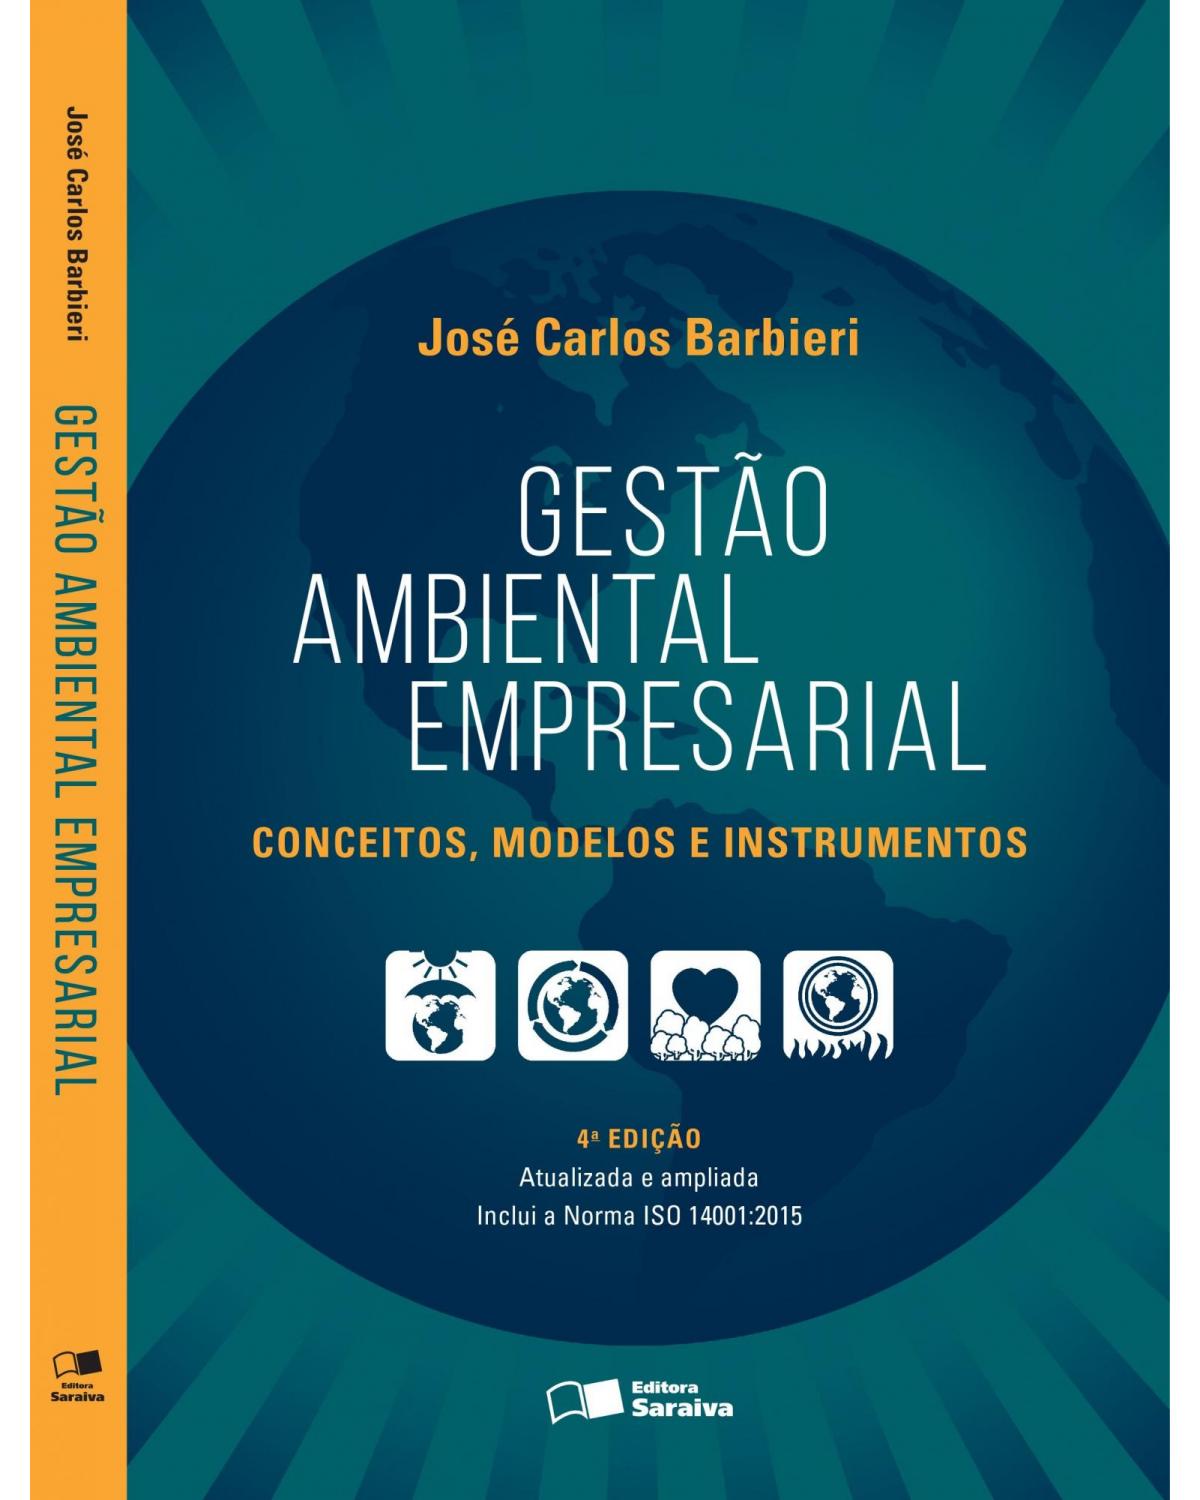 Gestão ambiental empresarial - conceitos, modelos e instrumentos - 4ª Edição | 2016